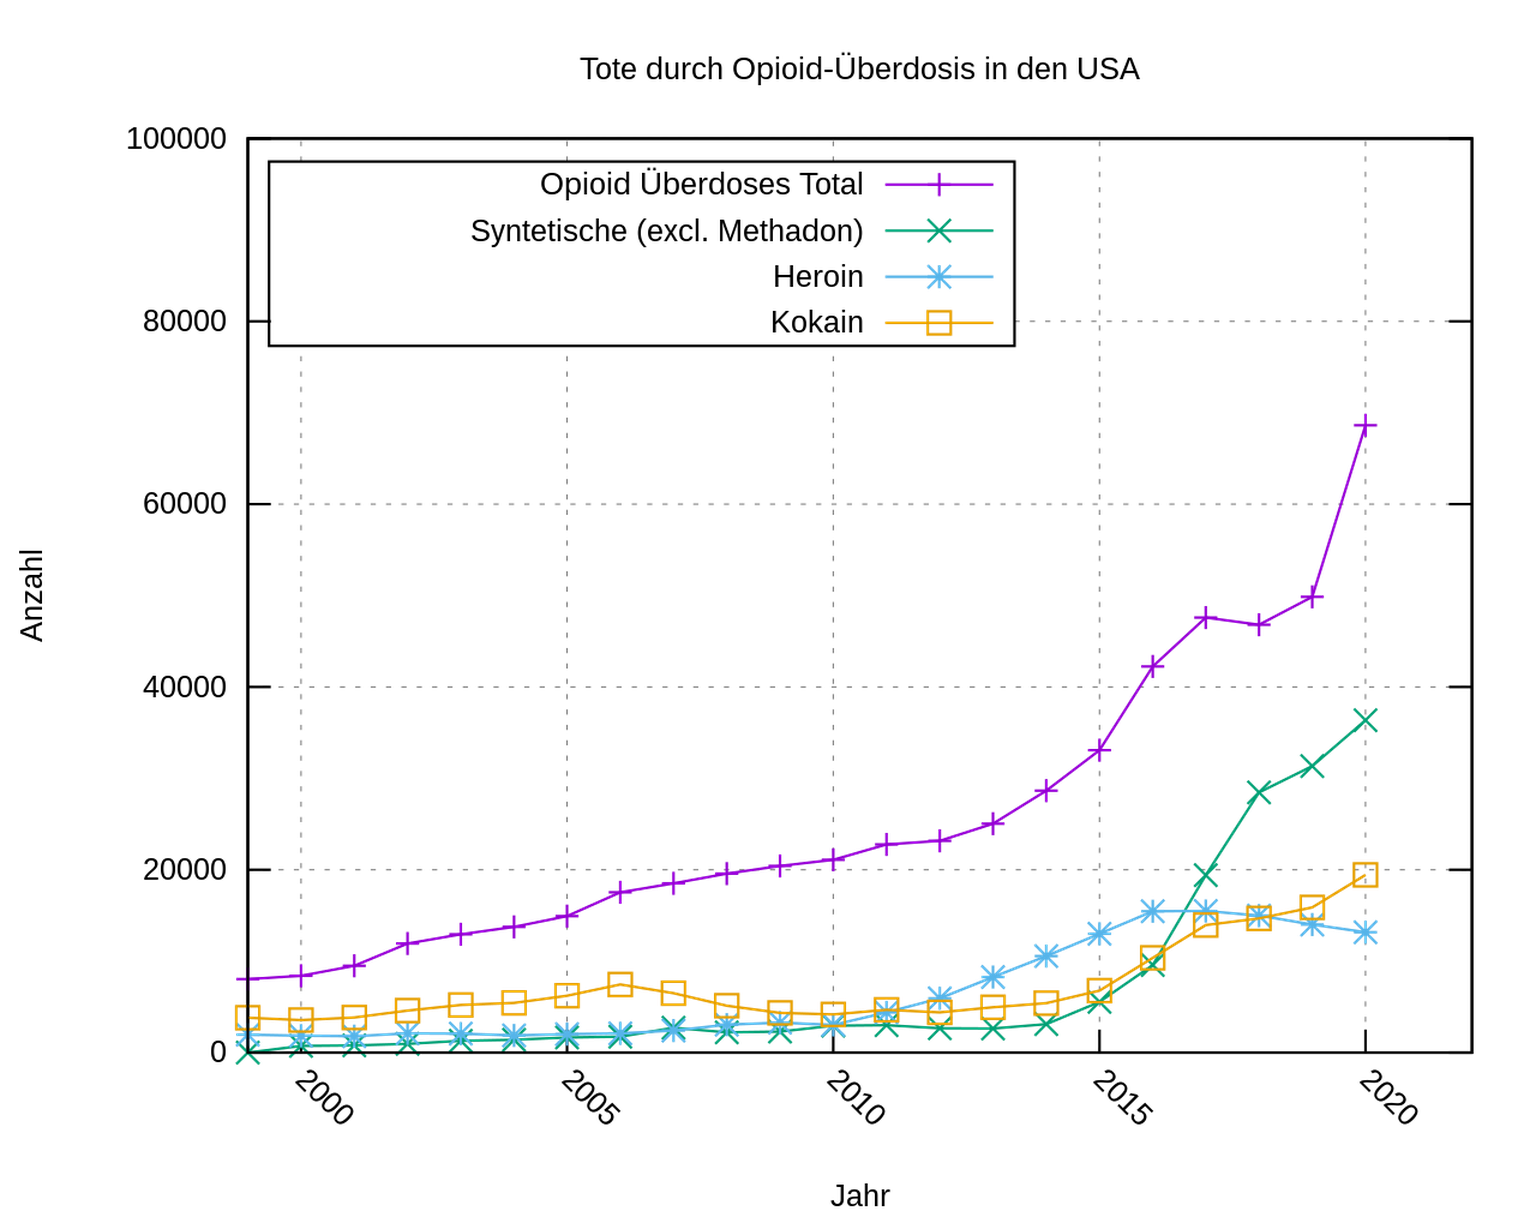 Todesfälle durch Überdosis von Opioiden in den USA, 2000–2020.
https://de.wikipedia.org/wiki/Opioidkrise_in_den_Vereinigten_Staaten#/media/Datei:Ueberdosis-durch-opioide-usa.svg